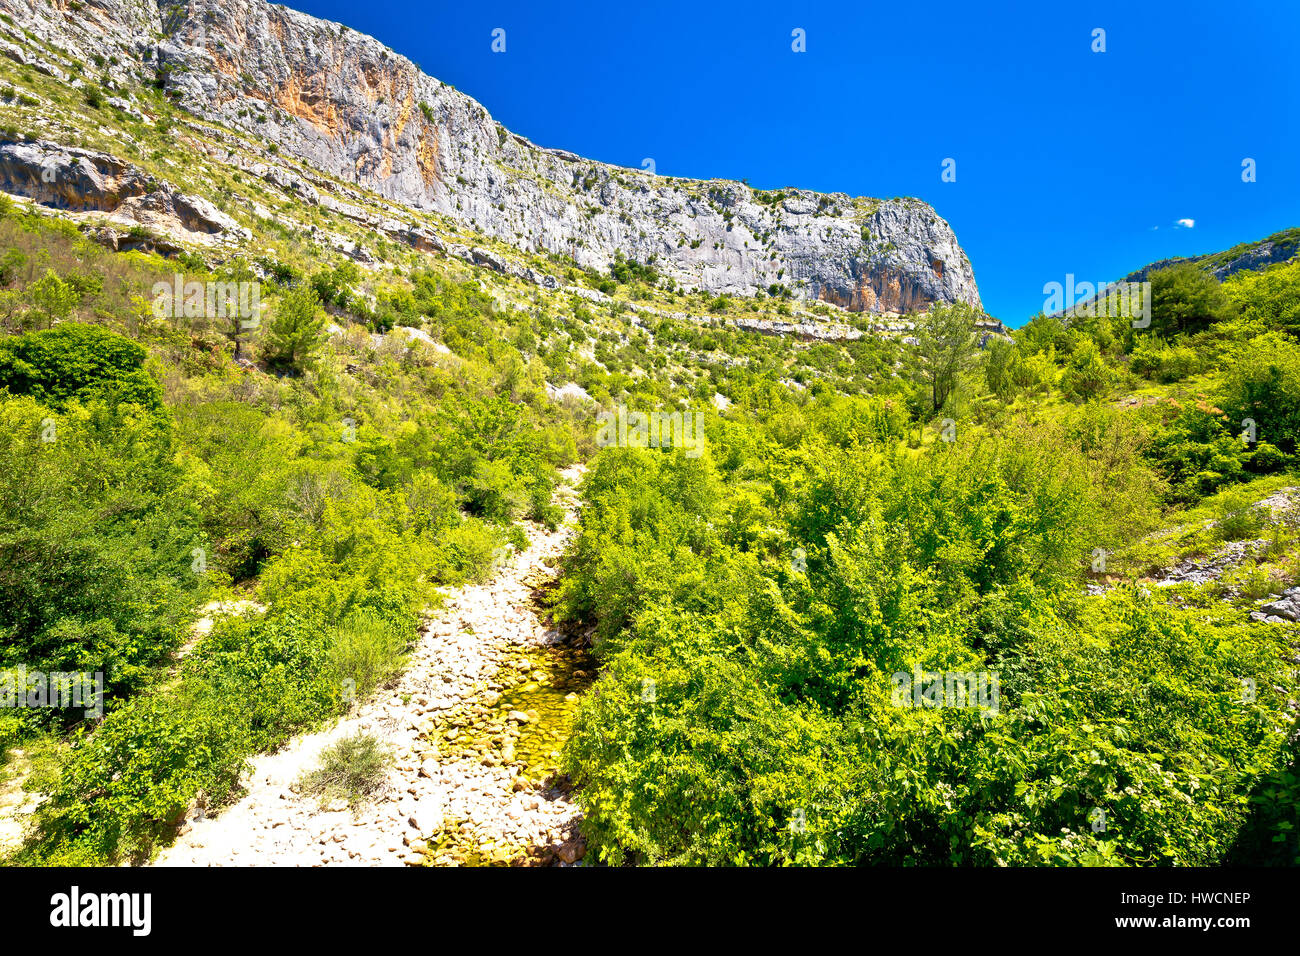 Rivière Cikola canyon sec à l'intérieur des terres, la Dalmatie, Croatie Banque D'Images